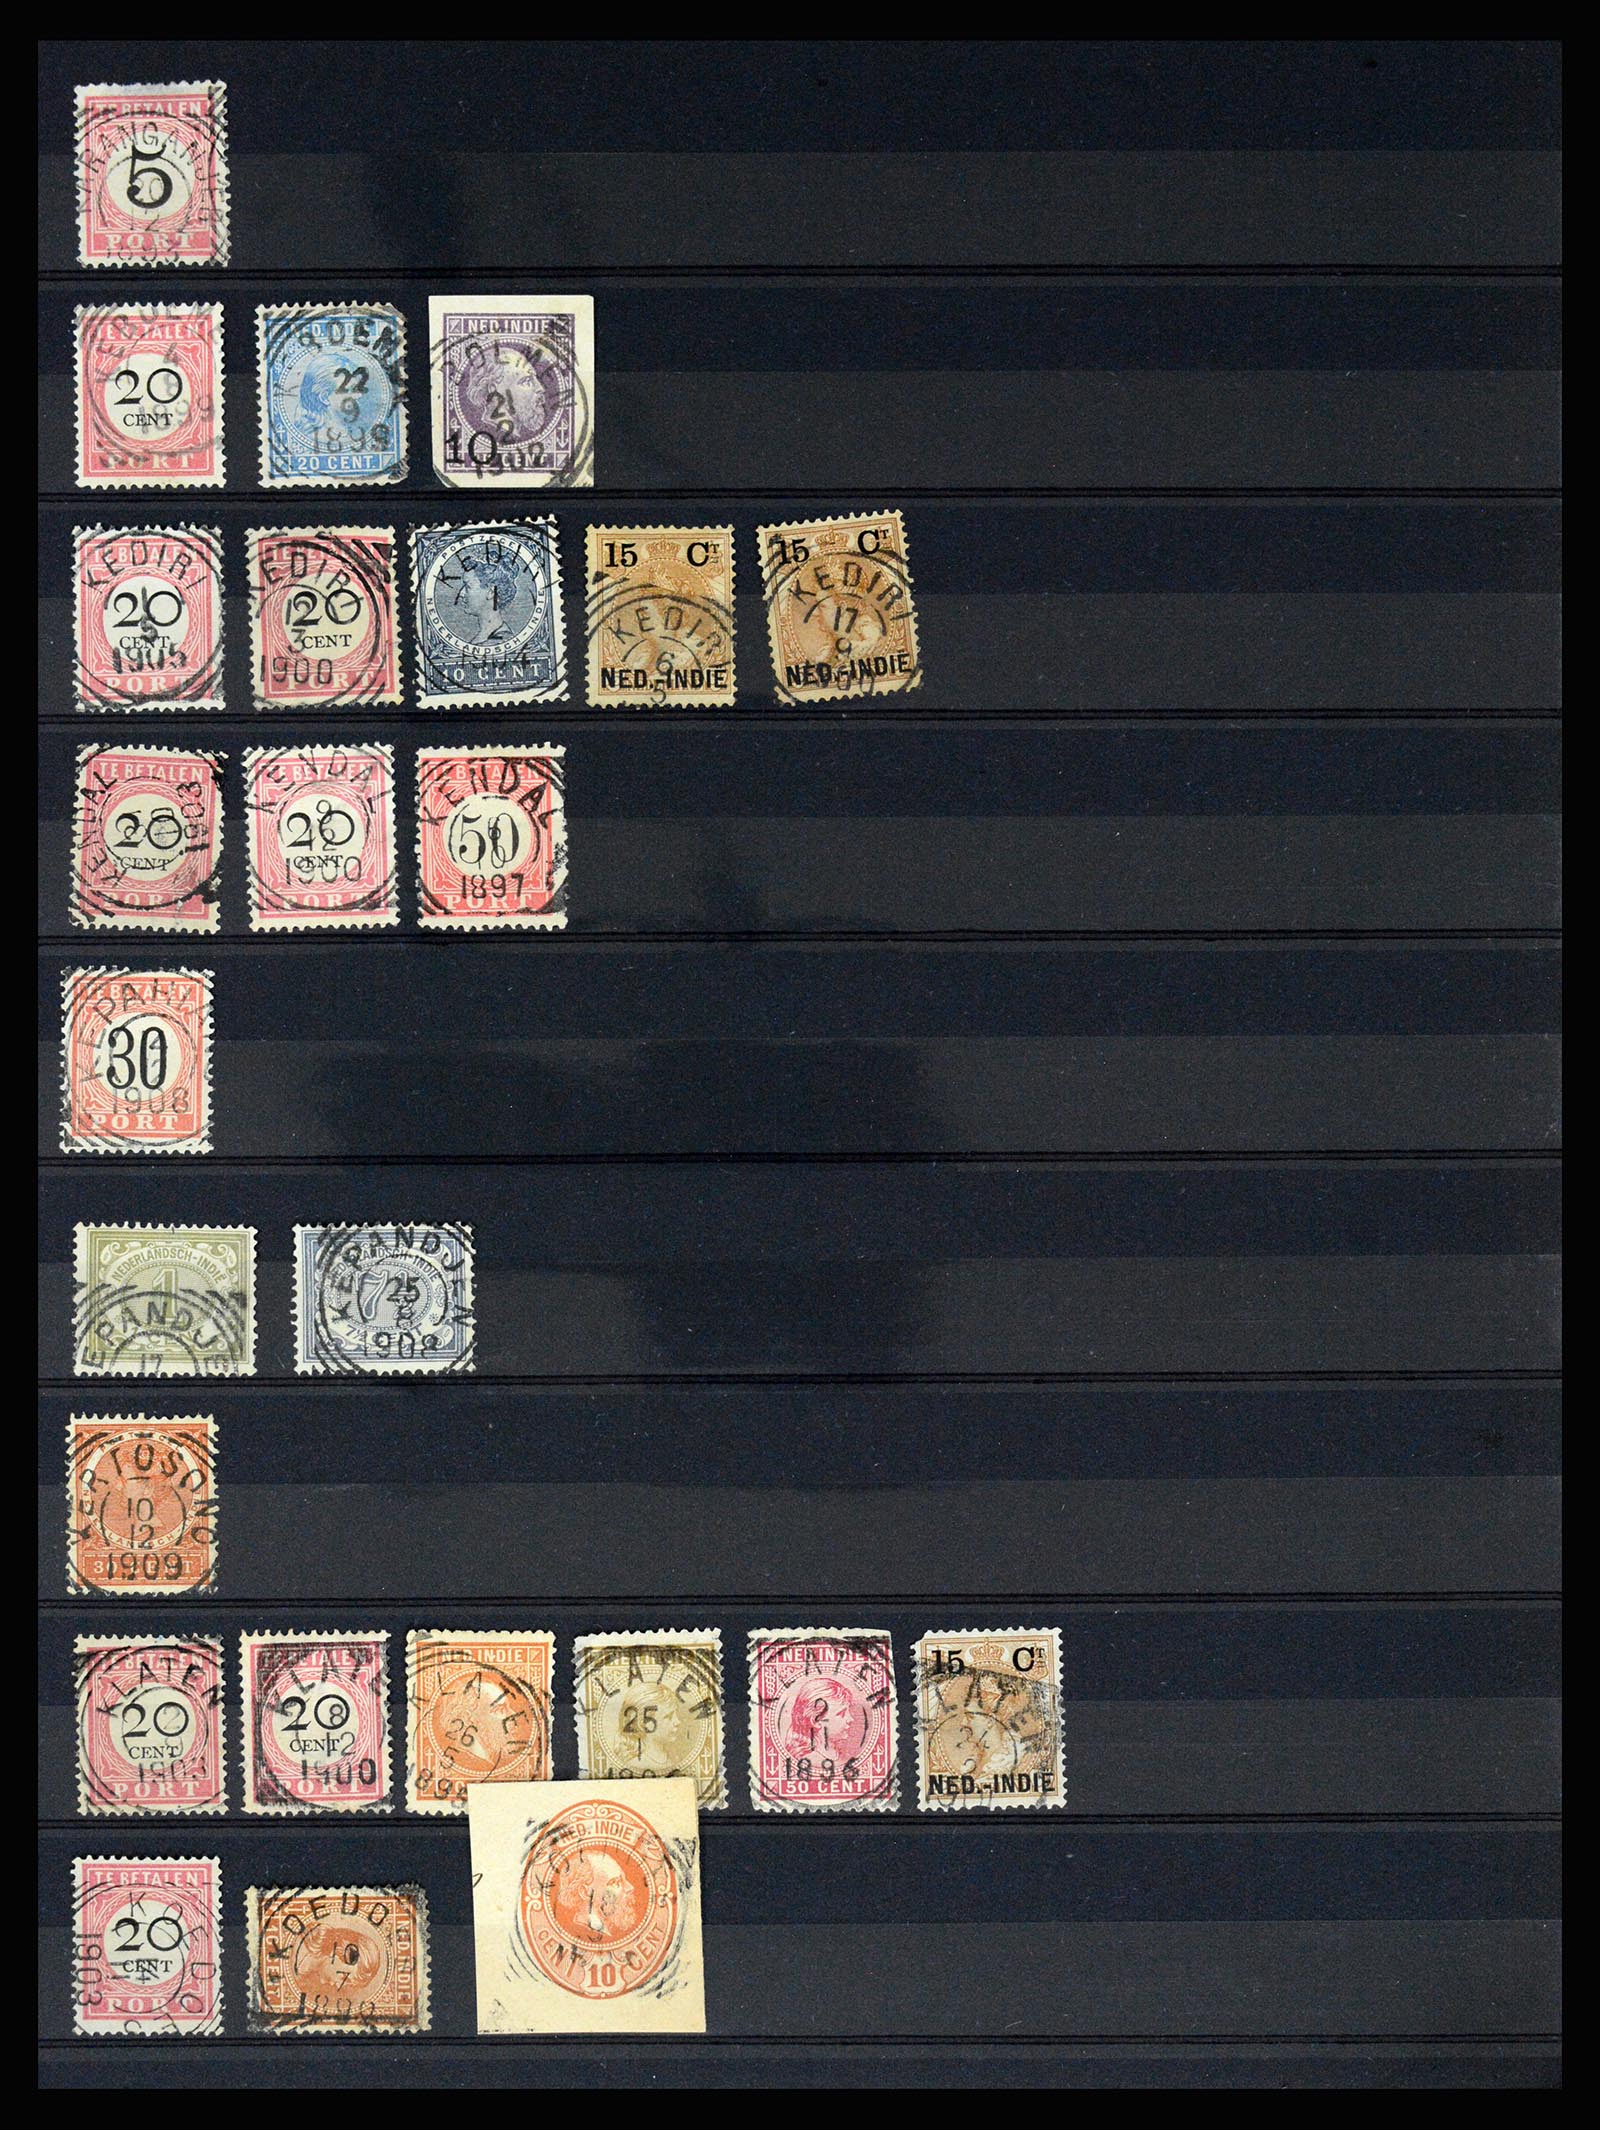 36512 087 - Stamp collection 36512 Nederlands Indië stempels 1872-1930.